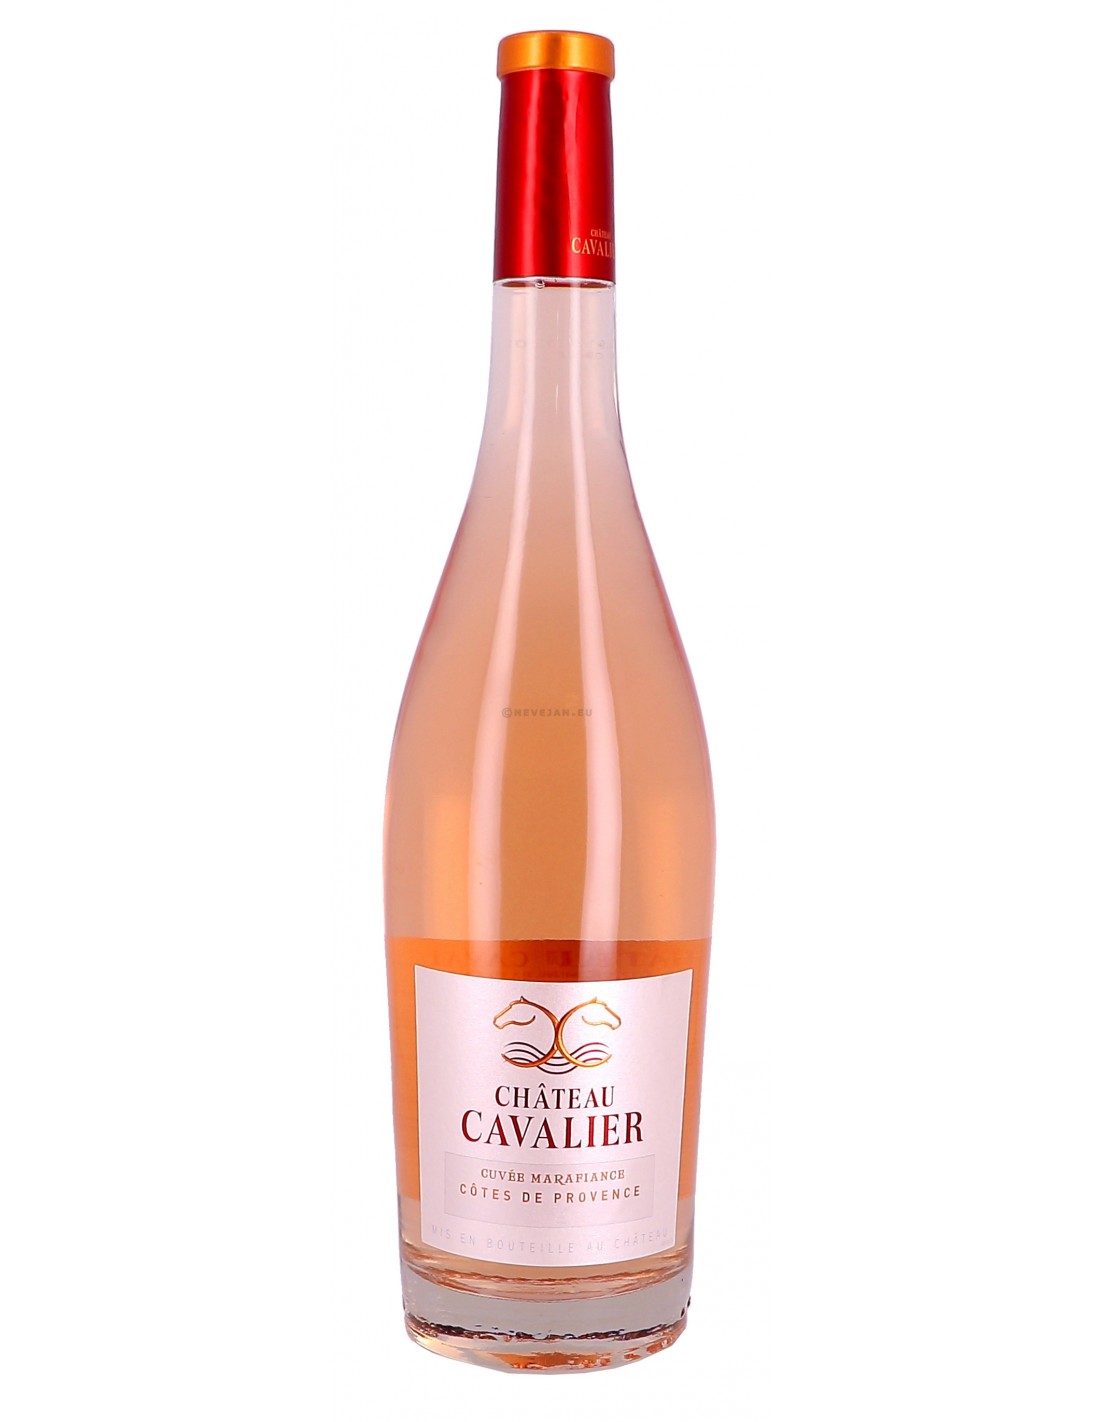 Vin roze sec, Chateau Cavalier Cuvée Marafiance, Côtes de Provence, 12.5% alc., 3L, Franta